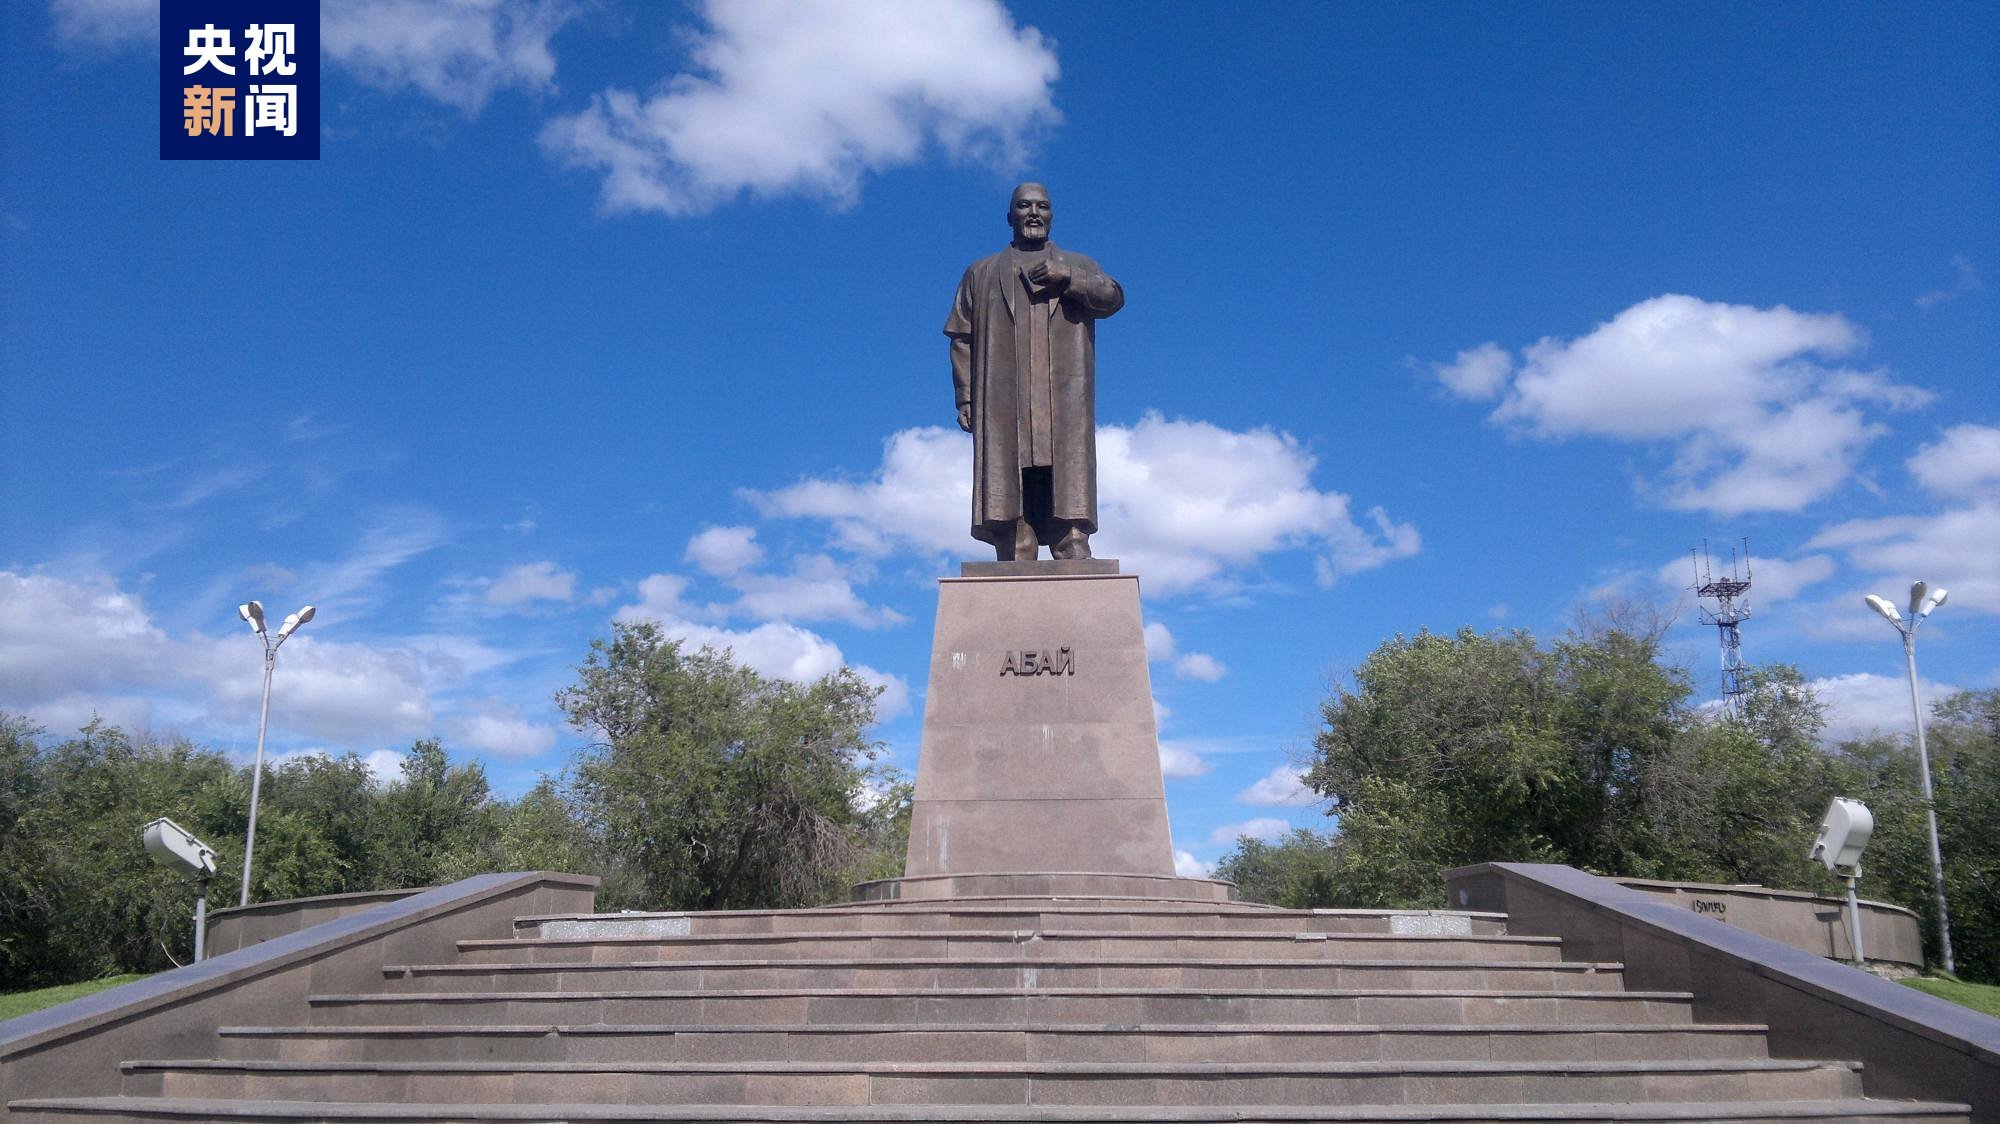 △哈萨克斯坦著名诗人、作曲家和思想家阿拜·库南巴耶夫的纪念碑